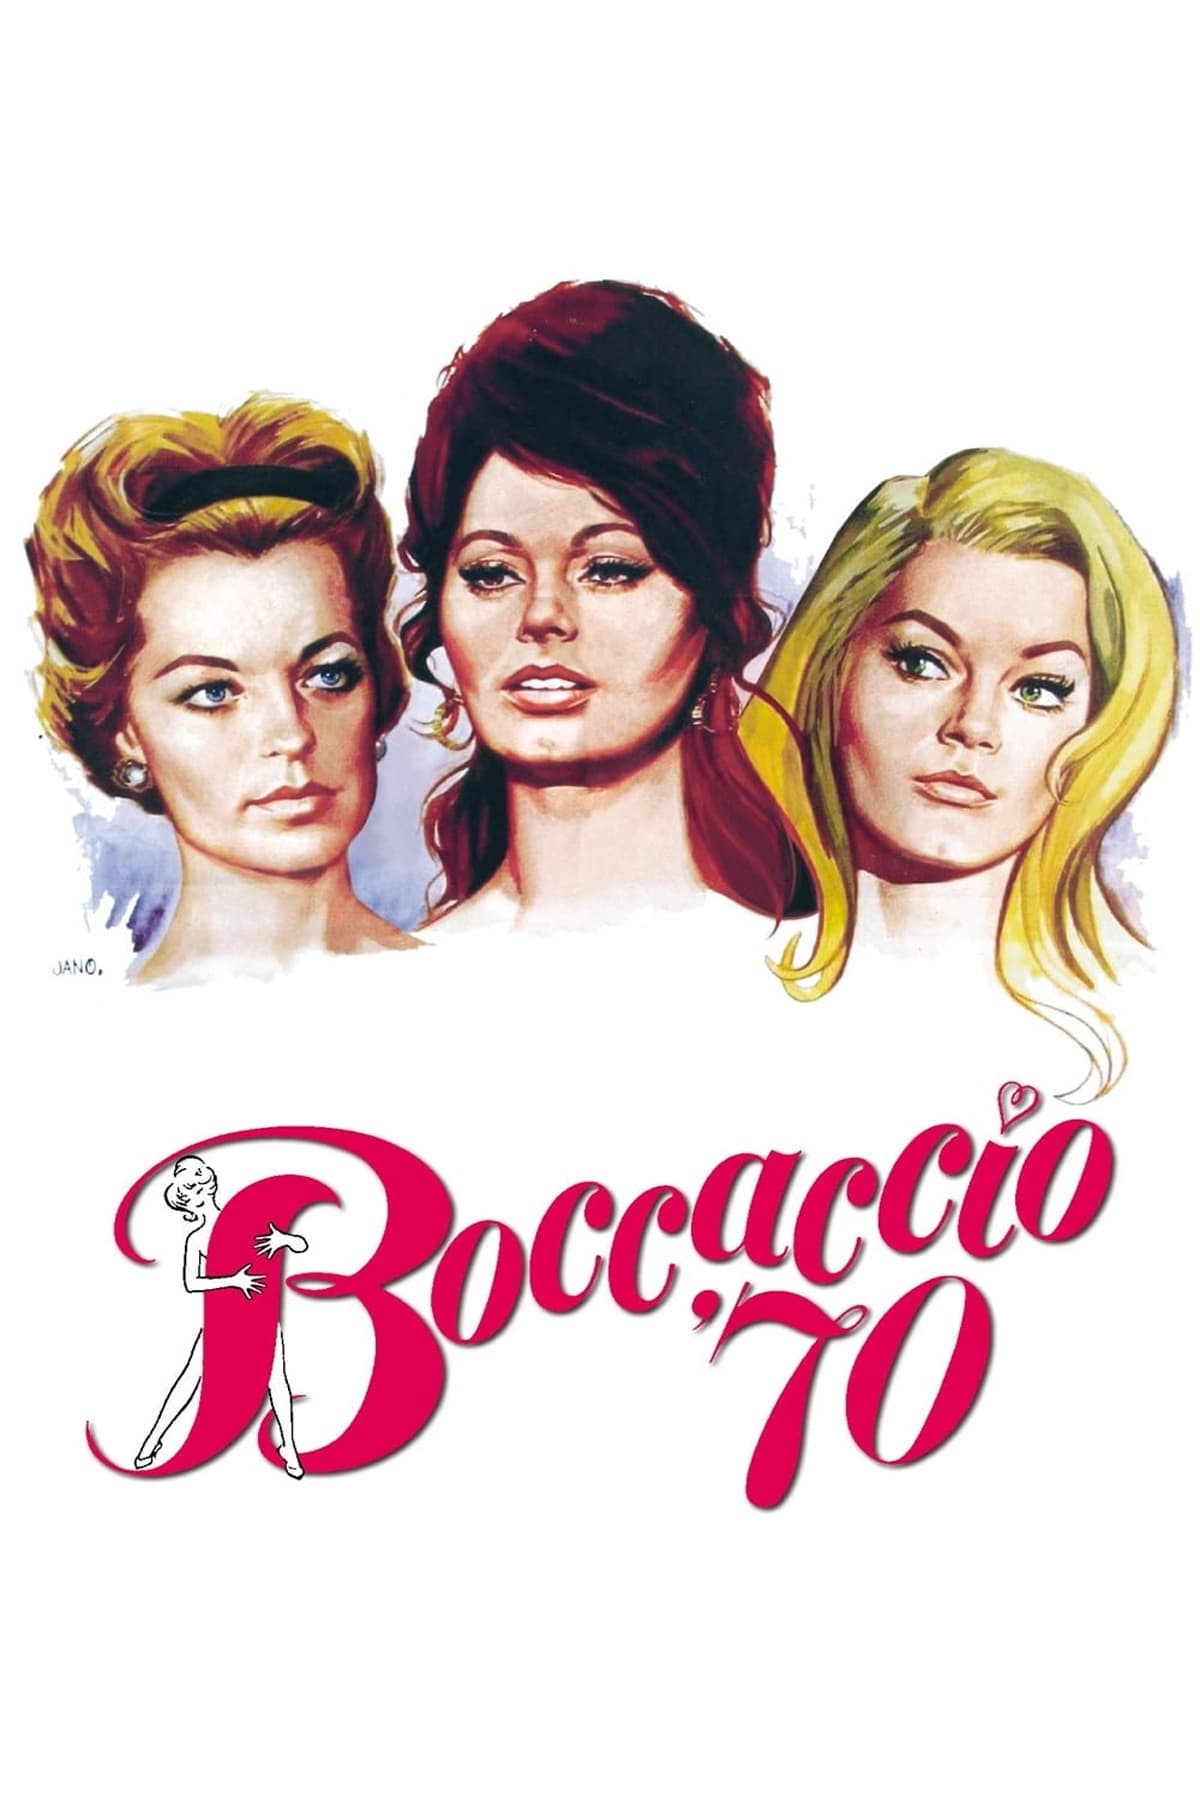 Boccaccio '70 (1962)